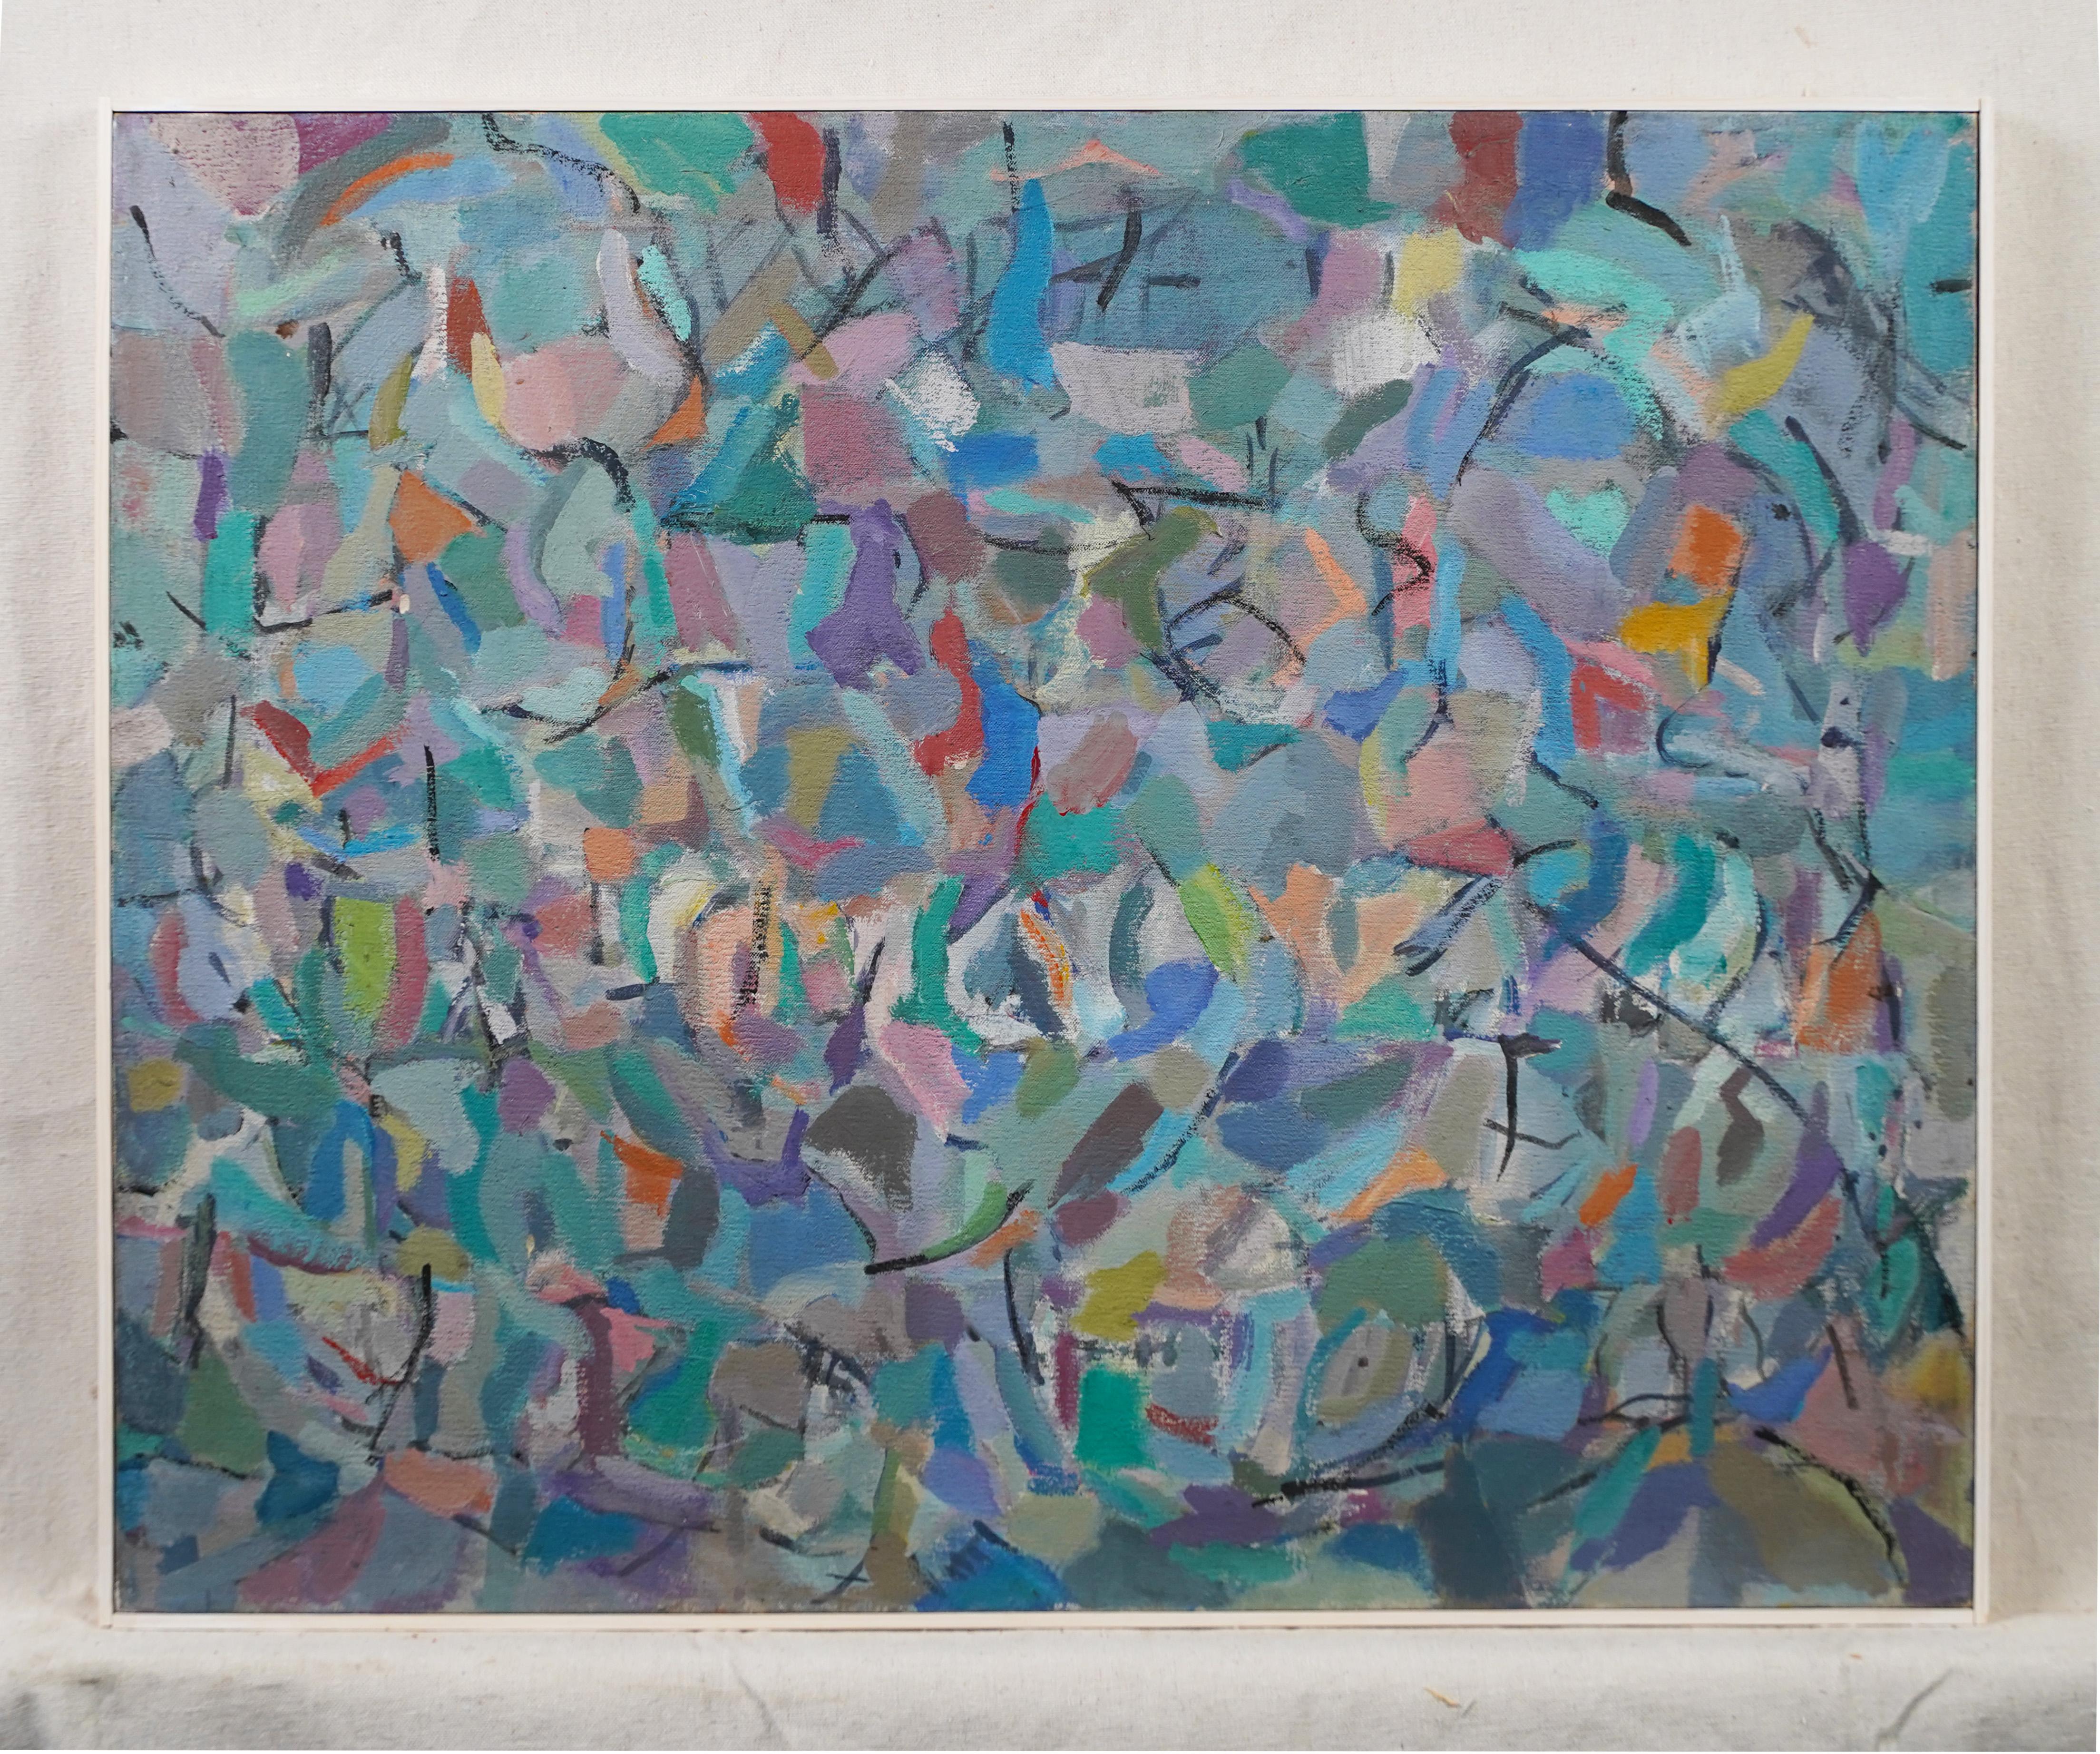 Ancienne peinture à l'huile abstraite moderniste américaine.  Huile sur toile.  Encadré.  Taille de l'image, 30L x 24H.